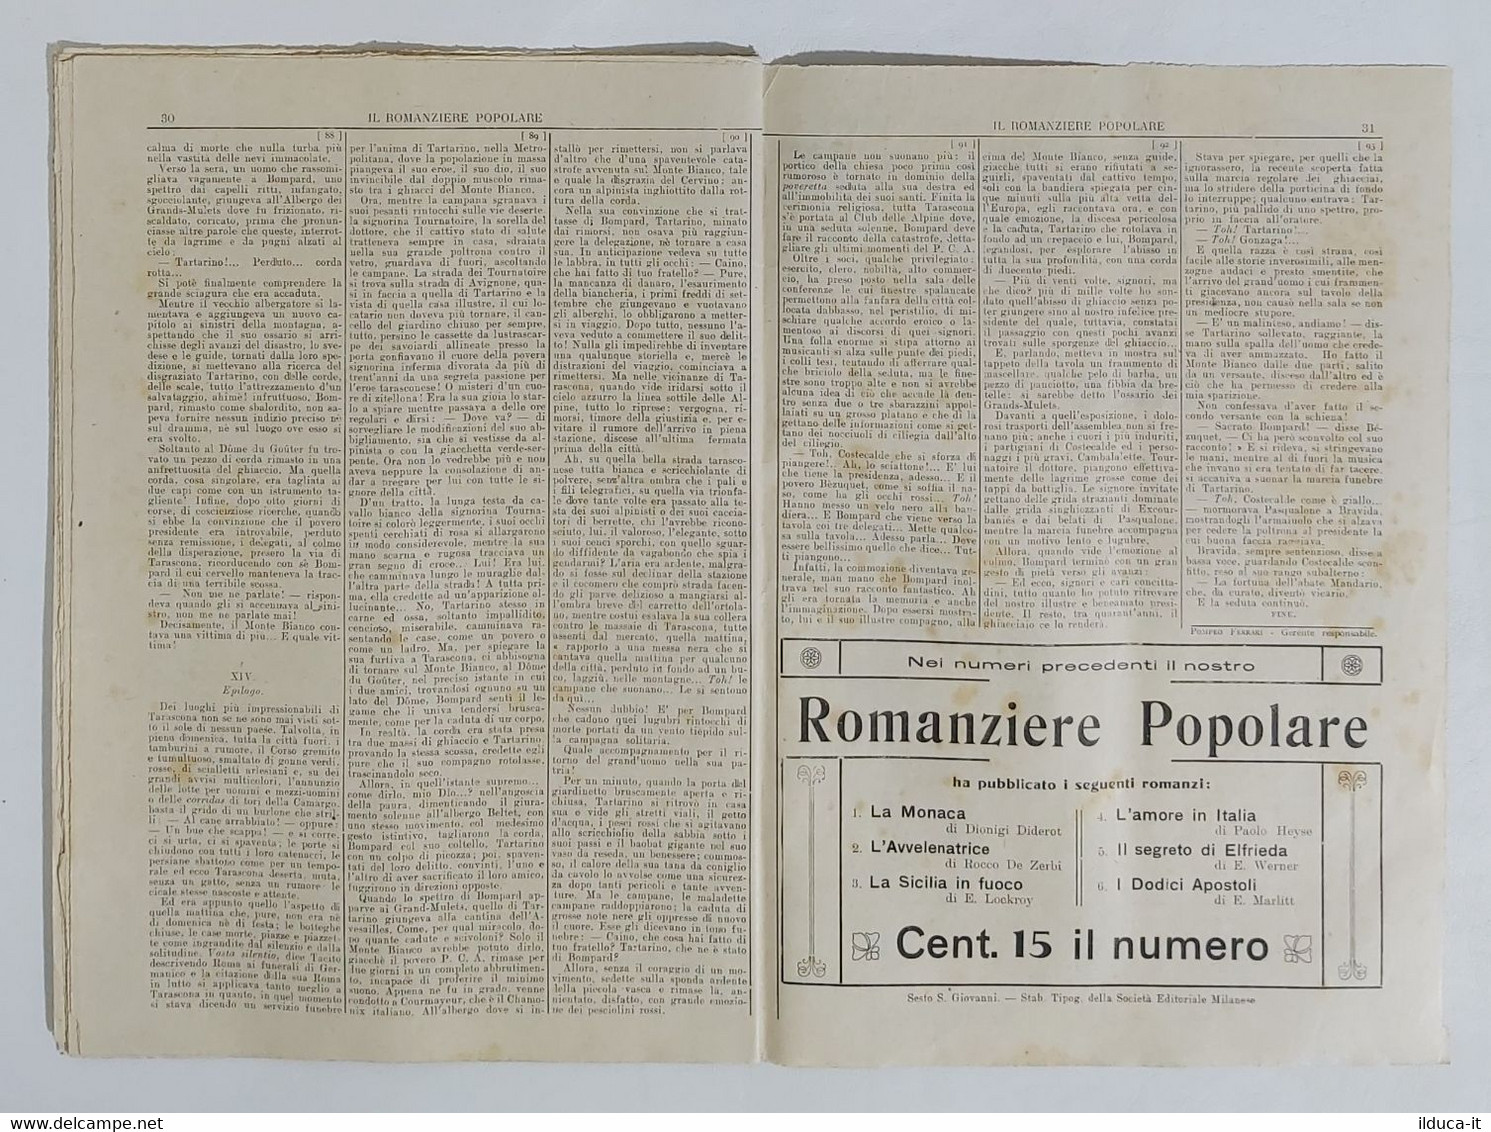 06974 Il Romanziere Popolare N.7 1911 - Daudet - Tartarino Sulle Alpi - Erzählungen, Kurzgeschichten